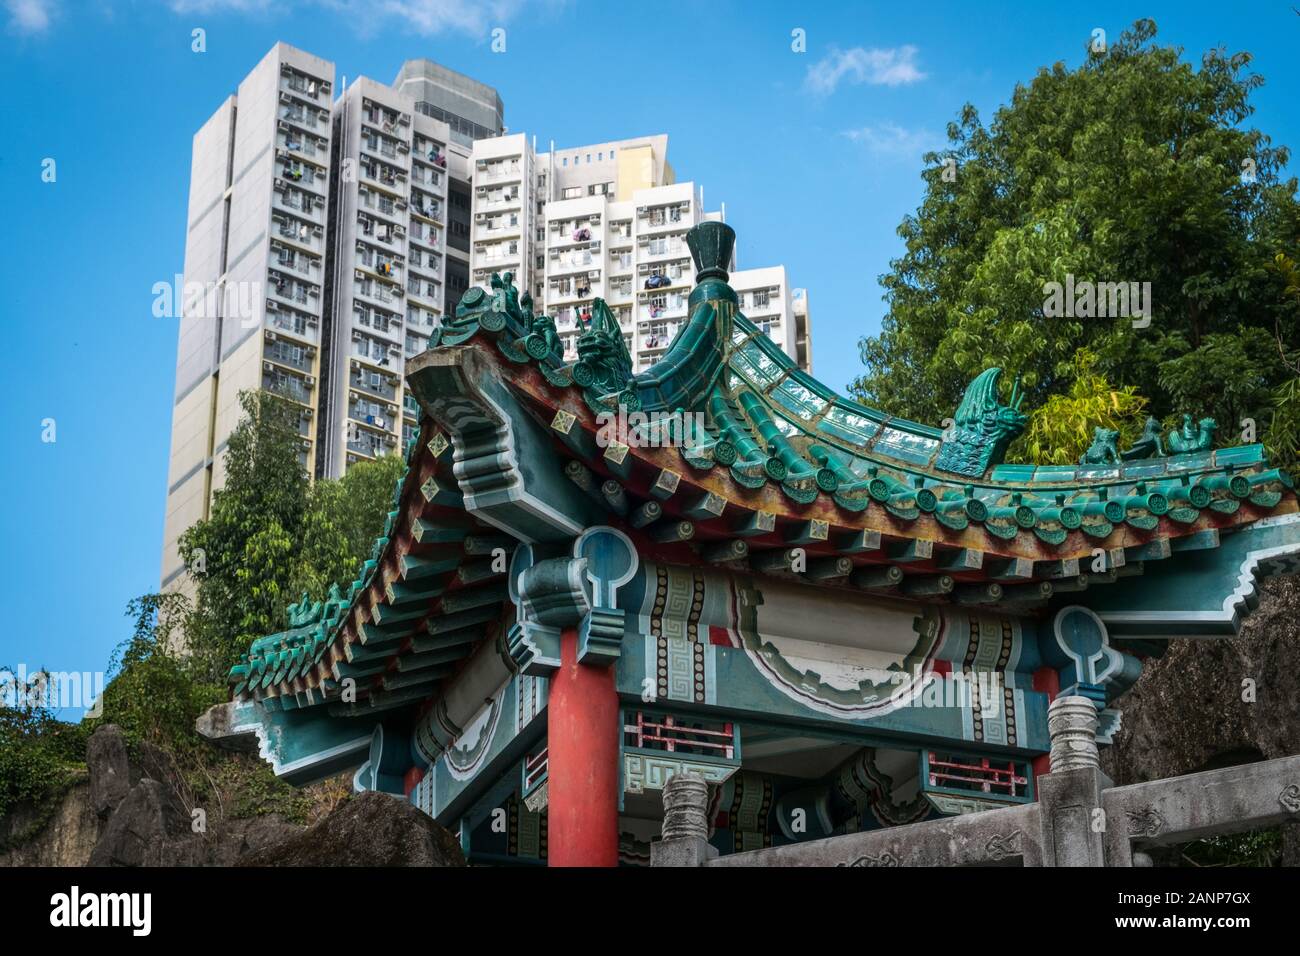 HongKong, China - November, 2019: Traditionelle chinesische Architektur in guten Wünschen, Garten, Wong Tai Sin Tempel in Hong Kong Stockfoto